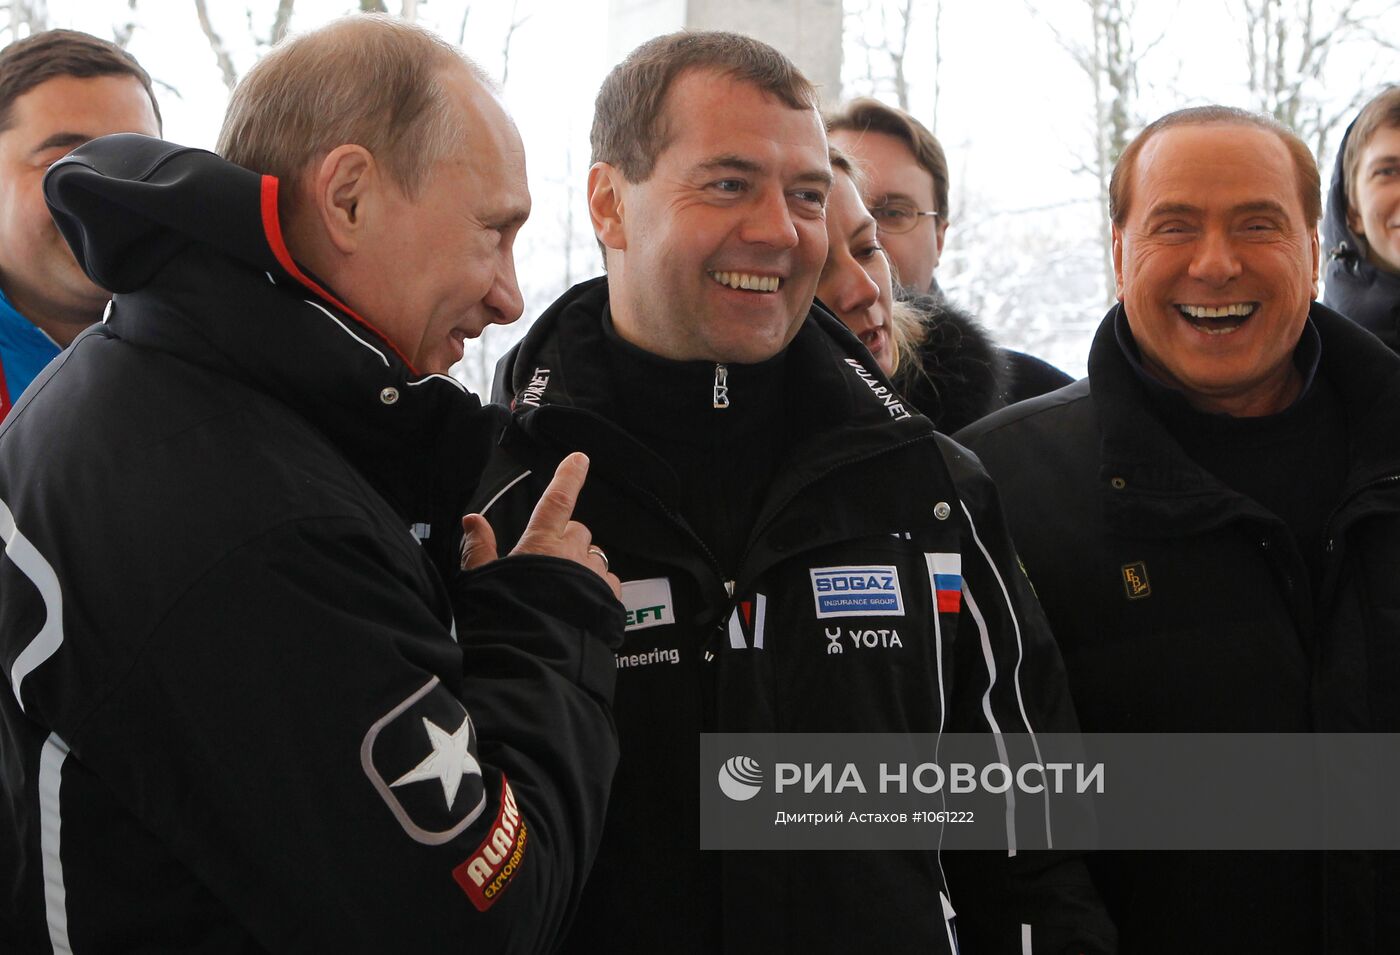 Посещение Д. Медведевым и В. Путиным санно-бобслейной трассы